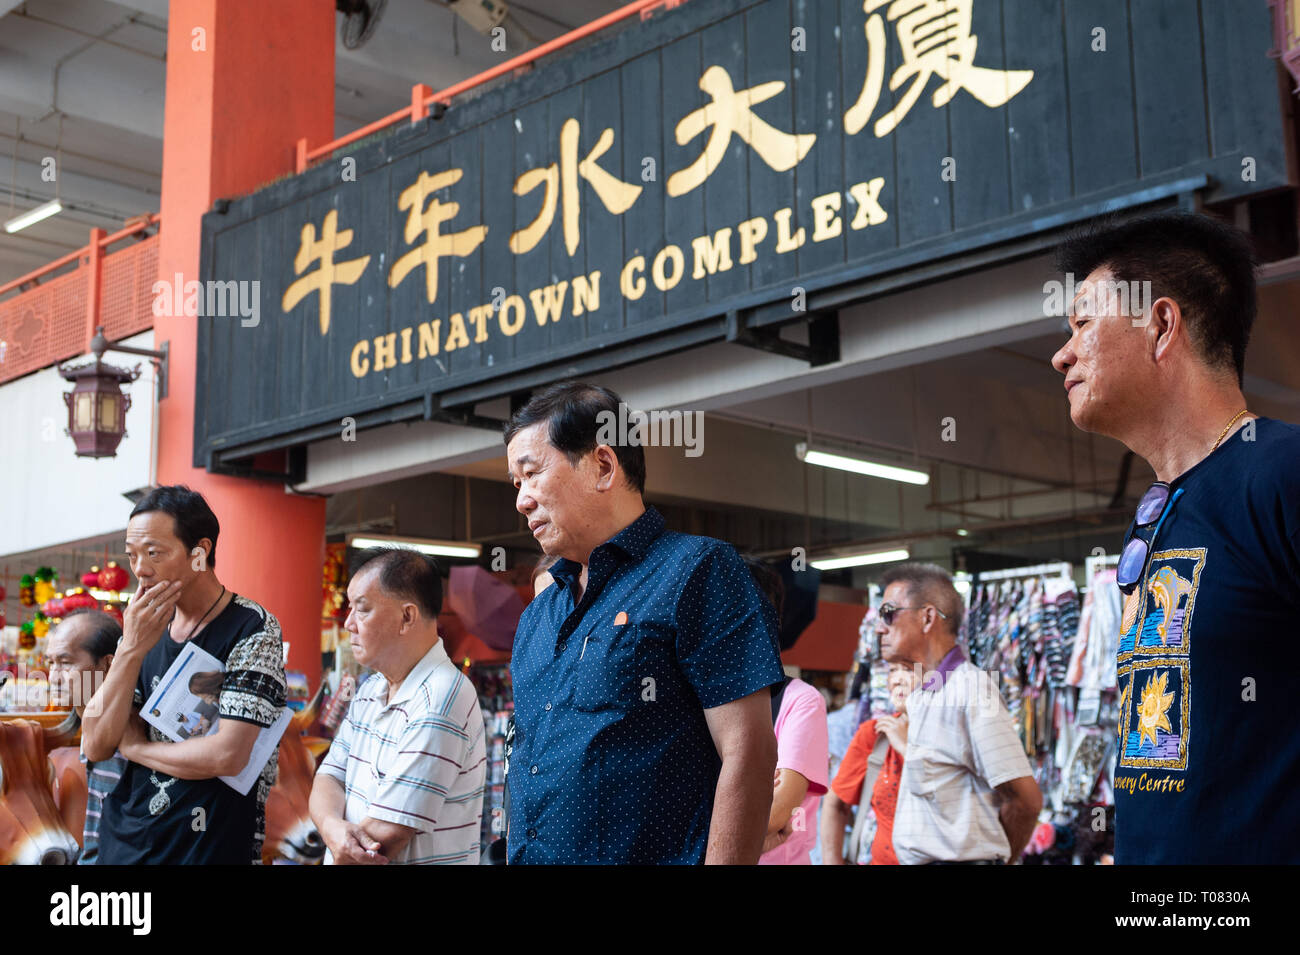 06.01.2019, Singapur, Singapur, Singapur - ältere Männer vor dem Chinatown Komplex in Kreta Ayer Platz treffen. 0 SL 190106 D003 CAROEX.JPG [MODELL RE Stockfoto